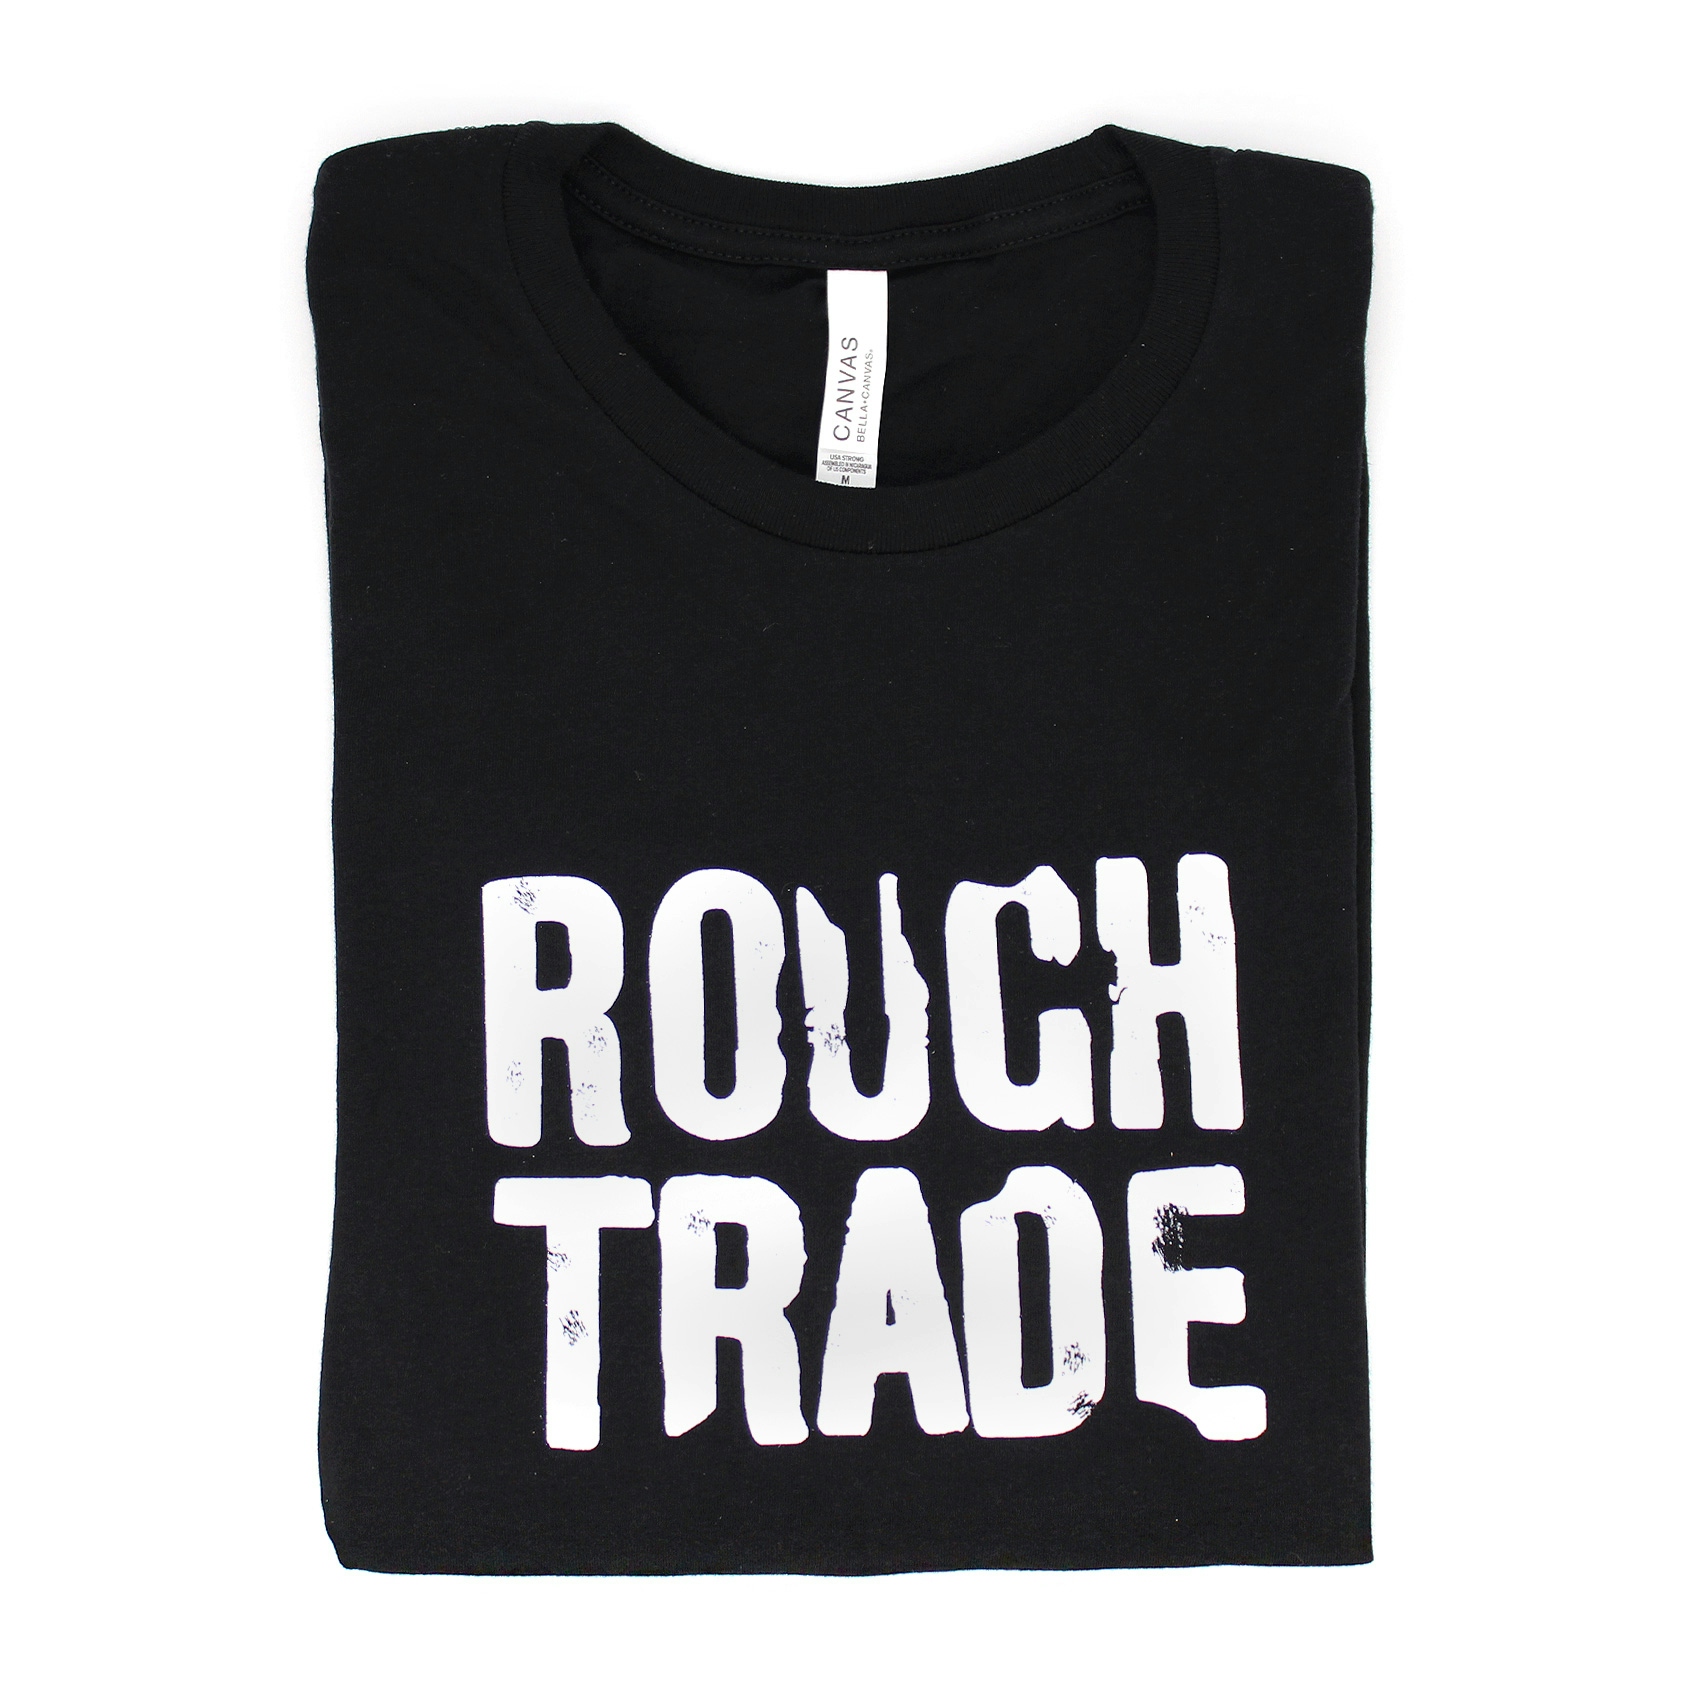 Album artwork for Rough Trade T Shirt by Rough Trade Shops